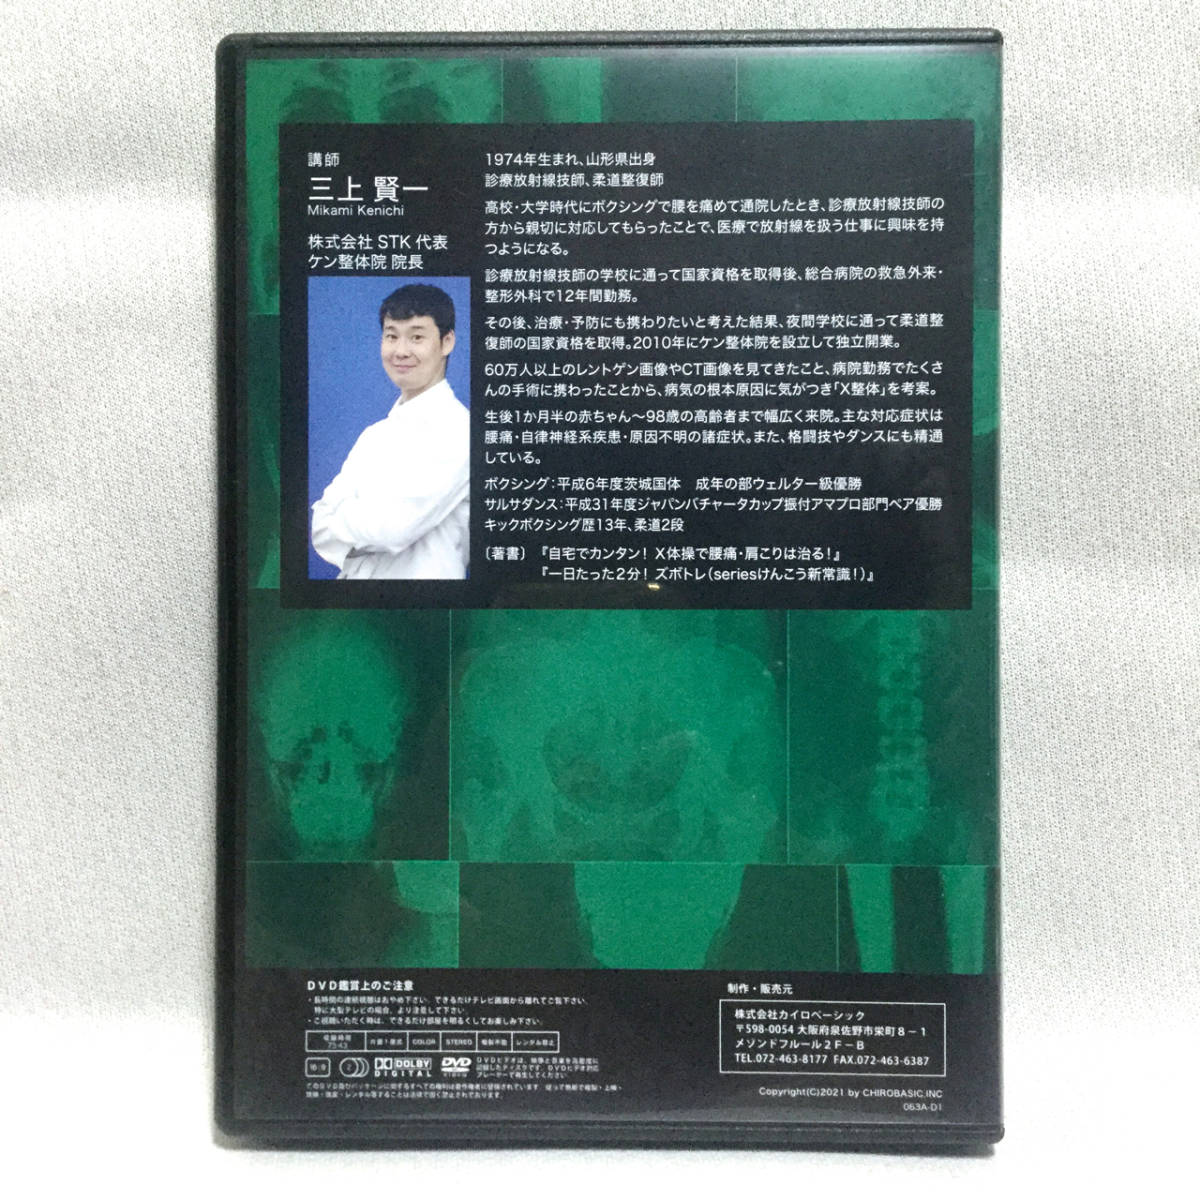 エックススキャンテクニック DVD三上賢一 整体 手技 新品未開封 最安値